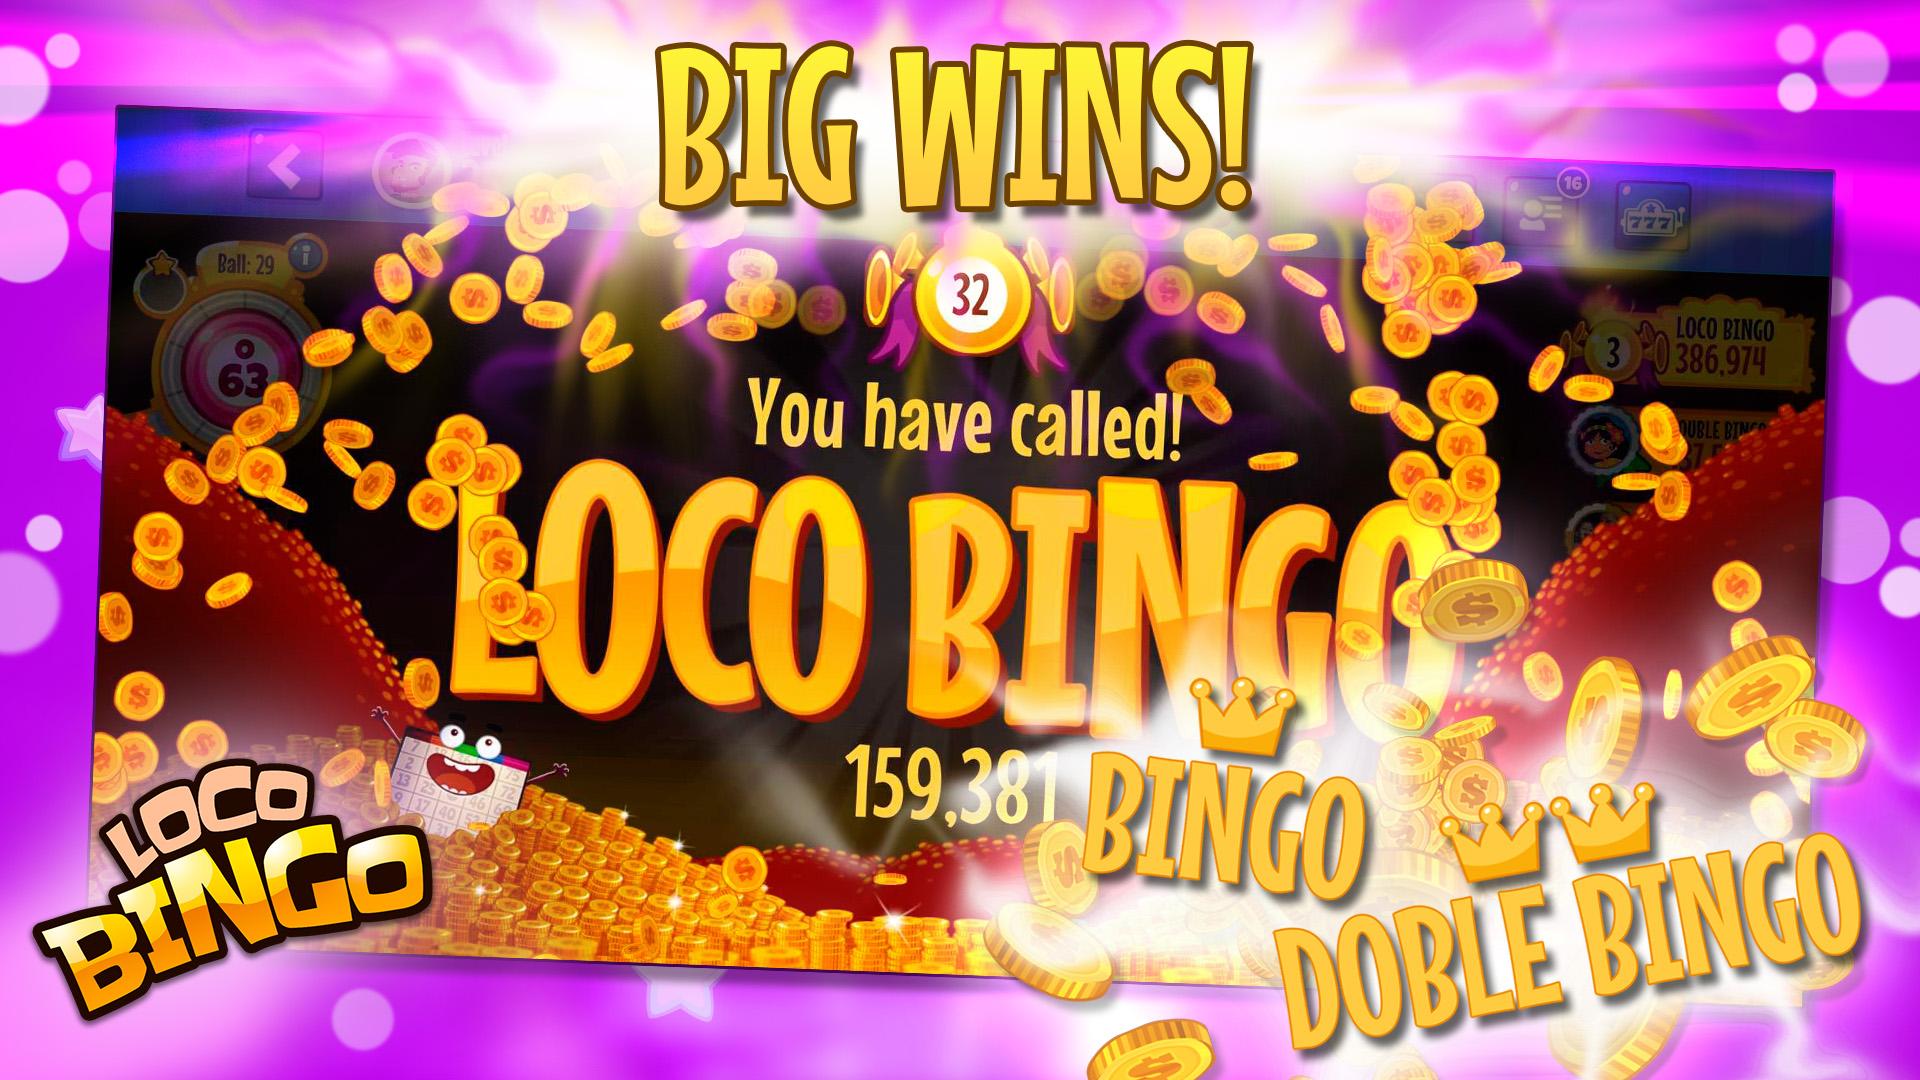 Loco bingo. Casino games slots 2021.6.0 Screenshot 2